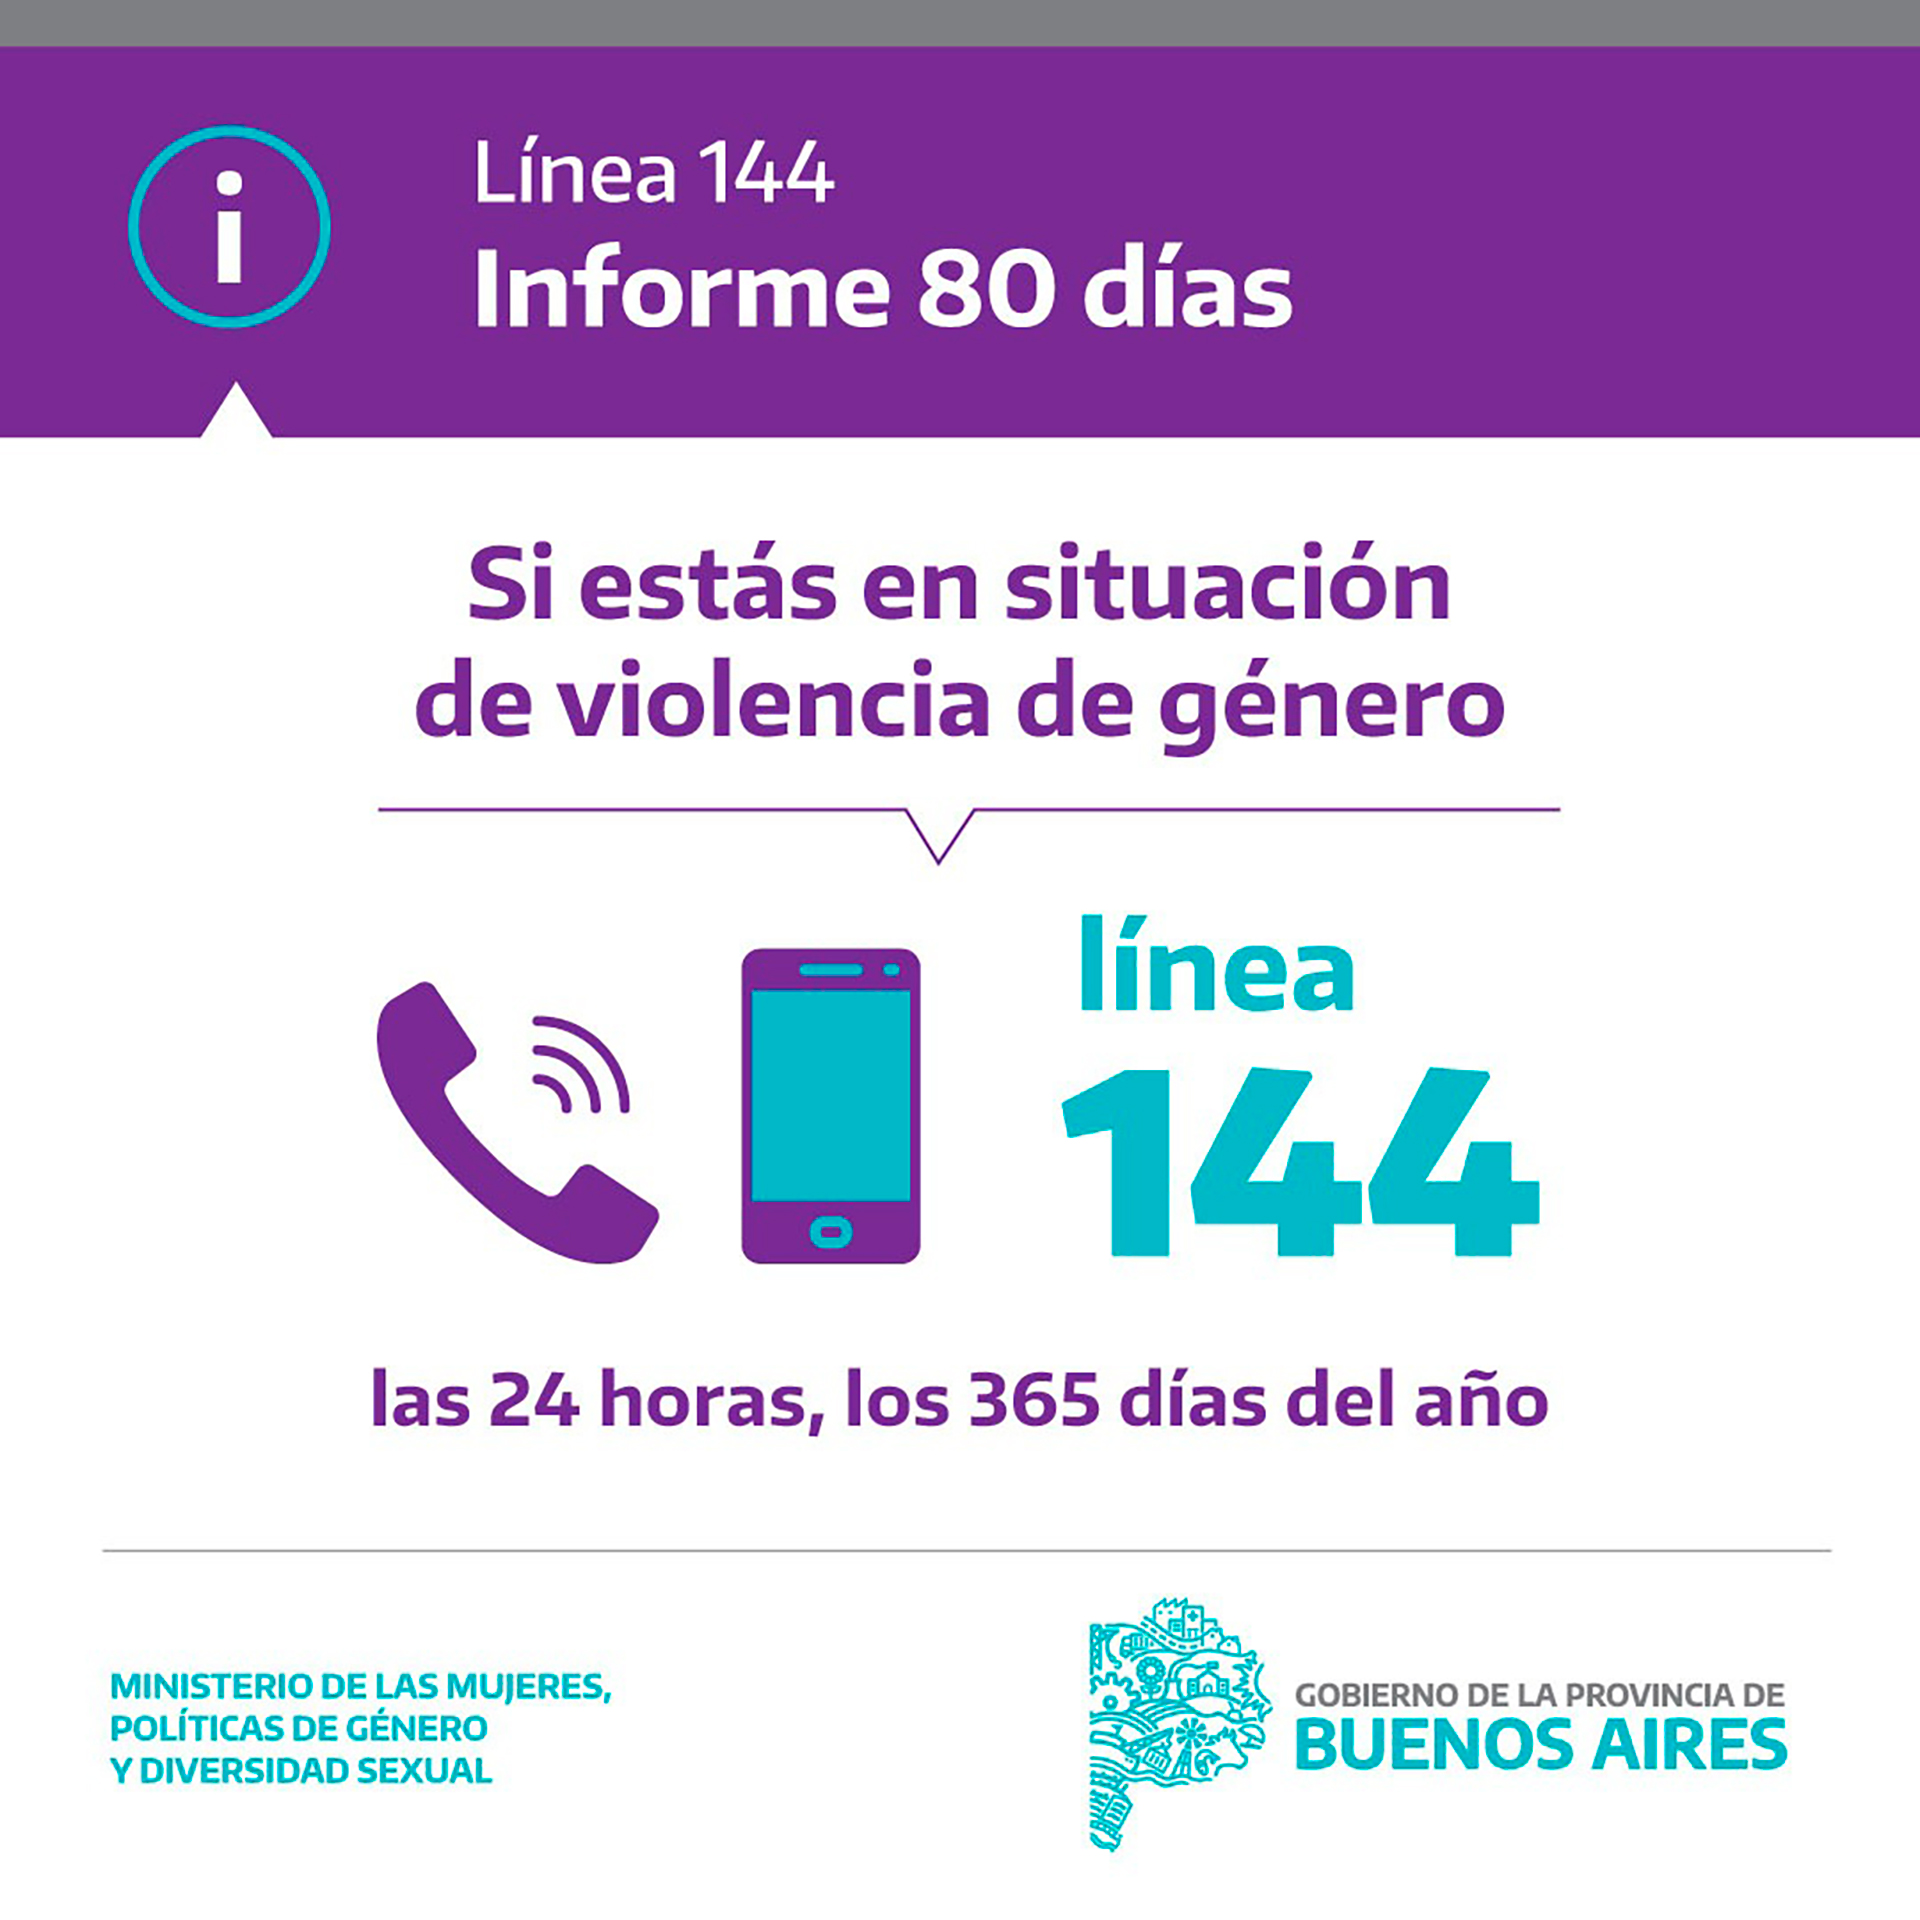 Los llamados a la Línea 144 por situaciones de violencia de género vienen de todas las provincias y la mayor cantidad de casos se da en el Área Metropolitana de Buenos Aires (AMBA). 